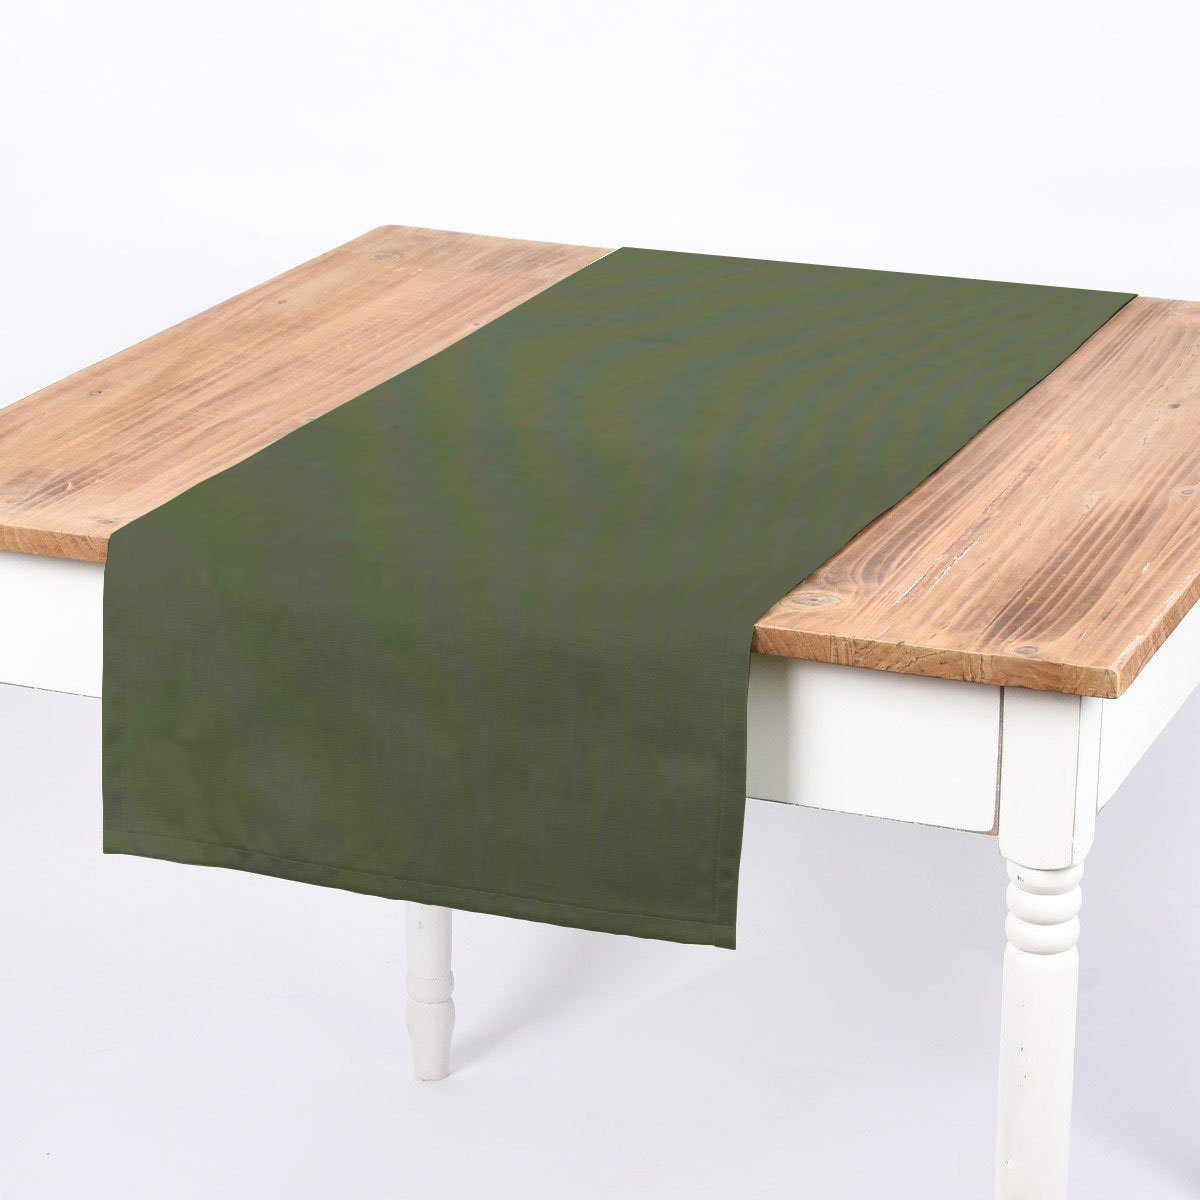 SCHÖNER LEBEN. SCHÖNER 40x160cm handmade LEBEN., einfarbig aus Tischläufer Tischläufer oliv von grün Canvas